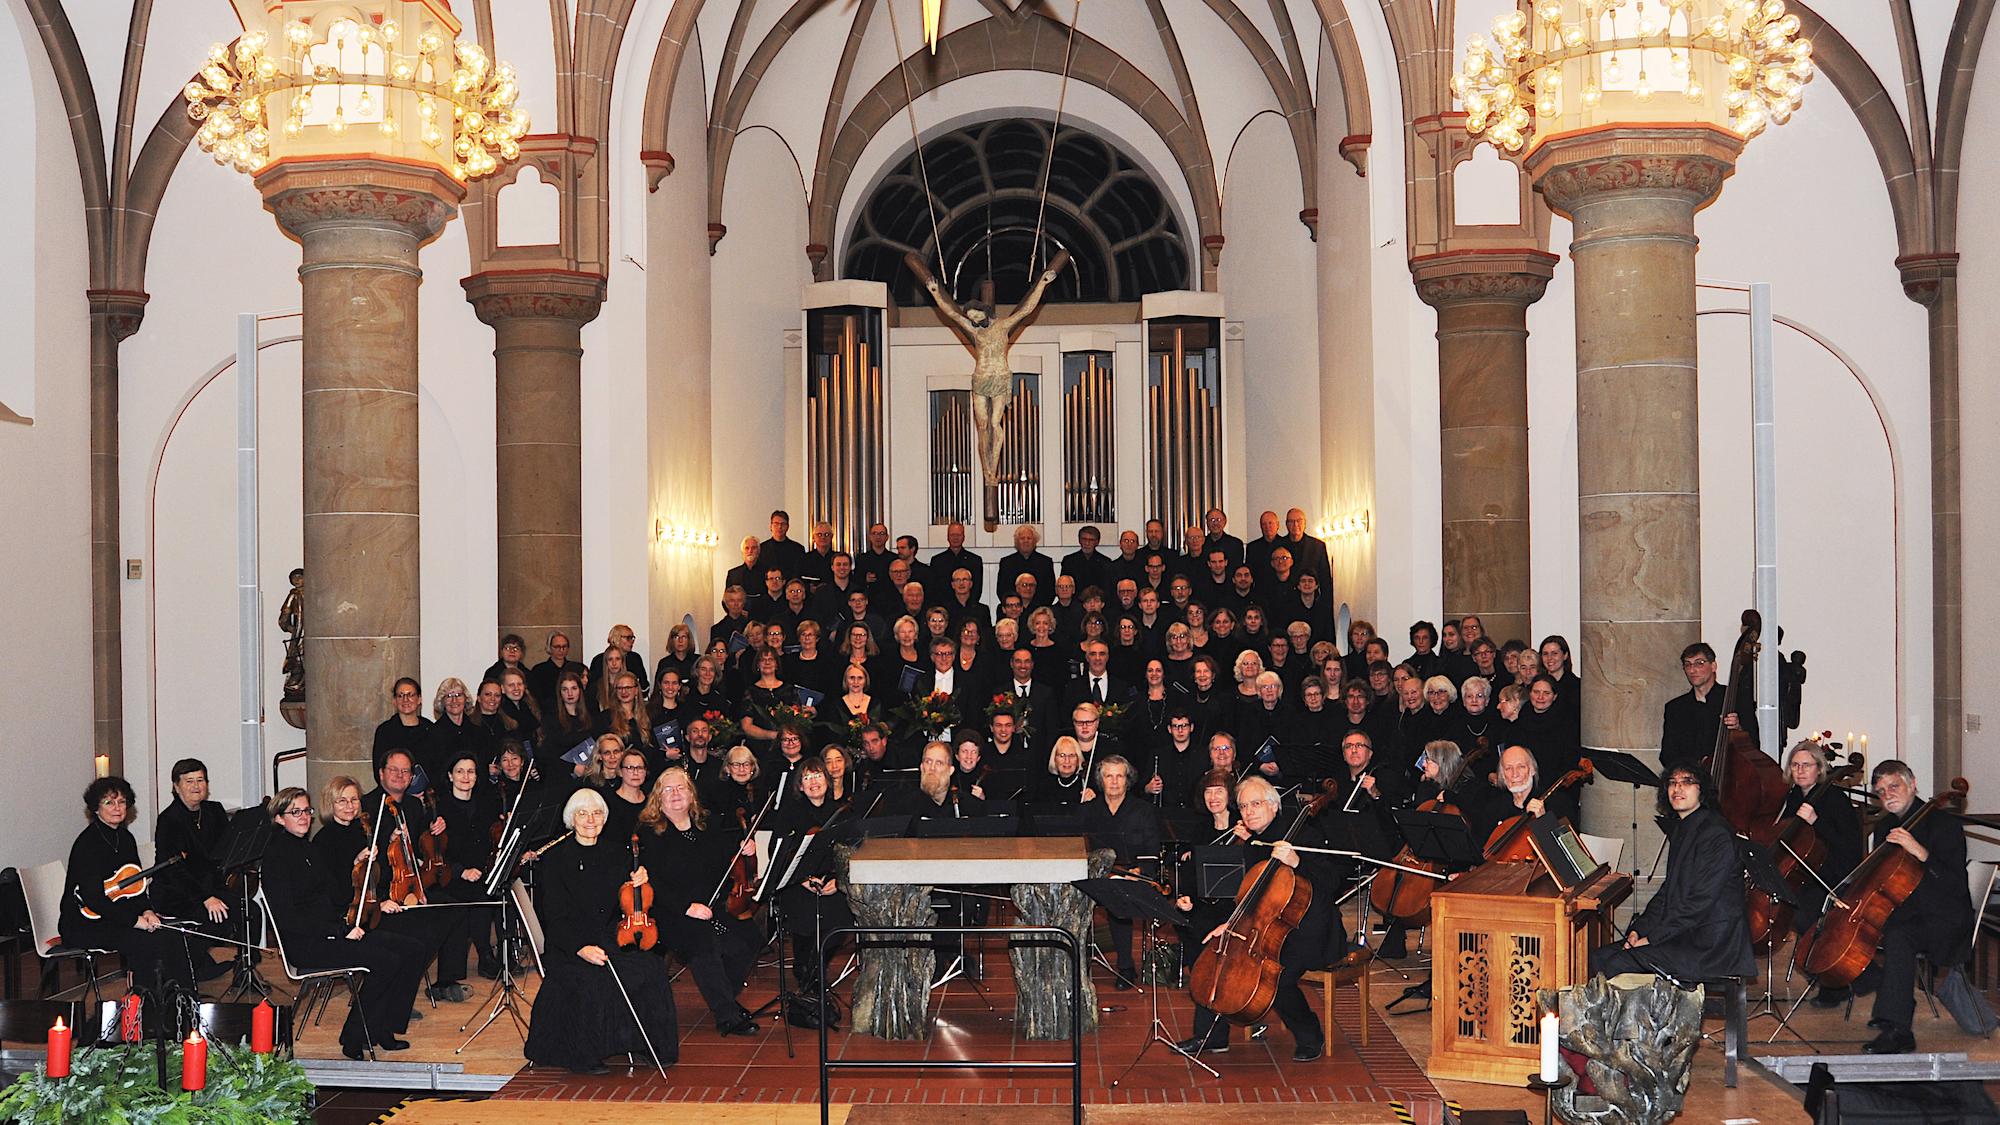 Auftakt zum Jubiläumsjahr war ein weihnachtliches Konzert in der Kirche St. Laurentius mit dem Kammerorchester der Gemeinde. (c) Chor St. Laurentius